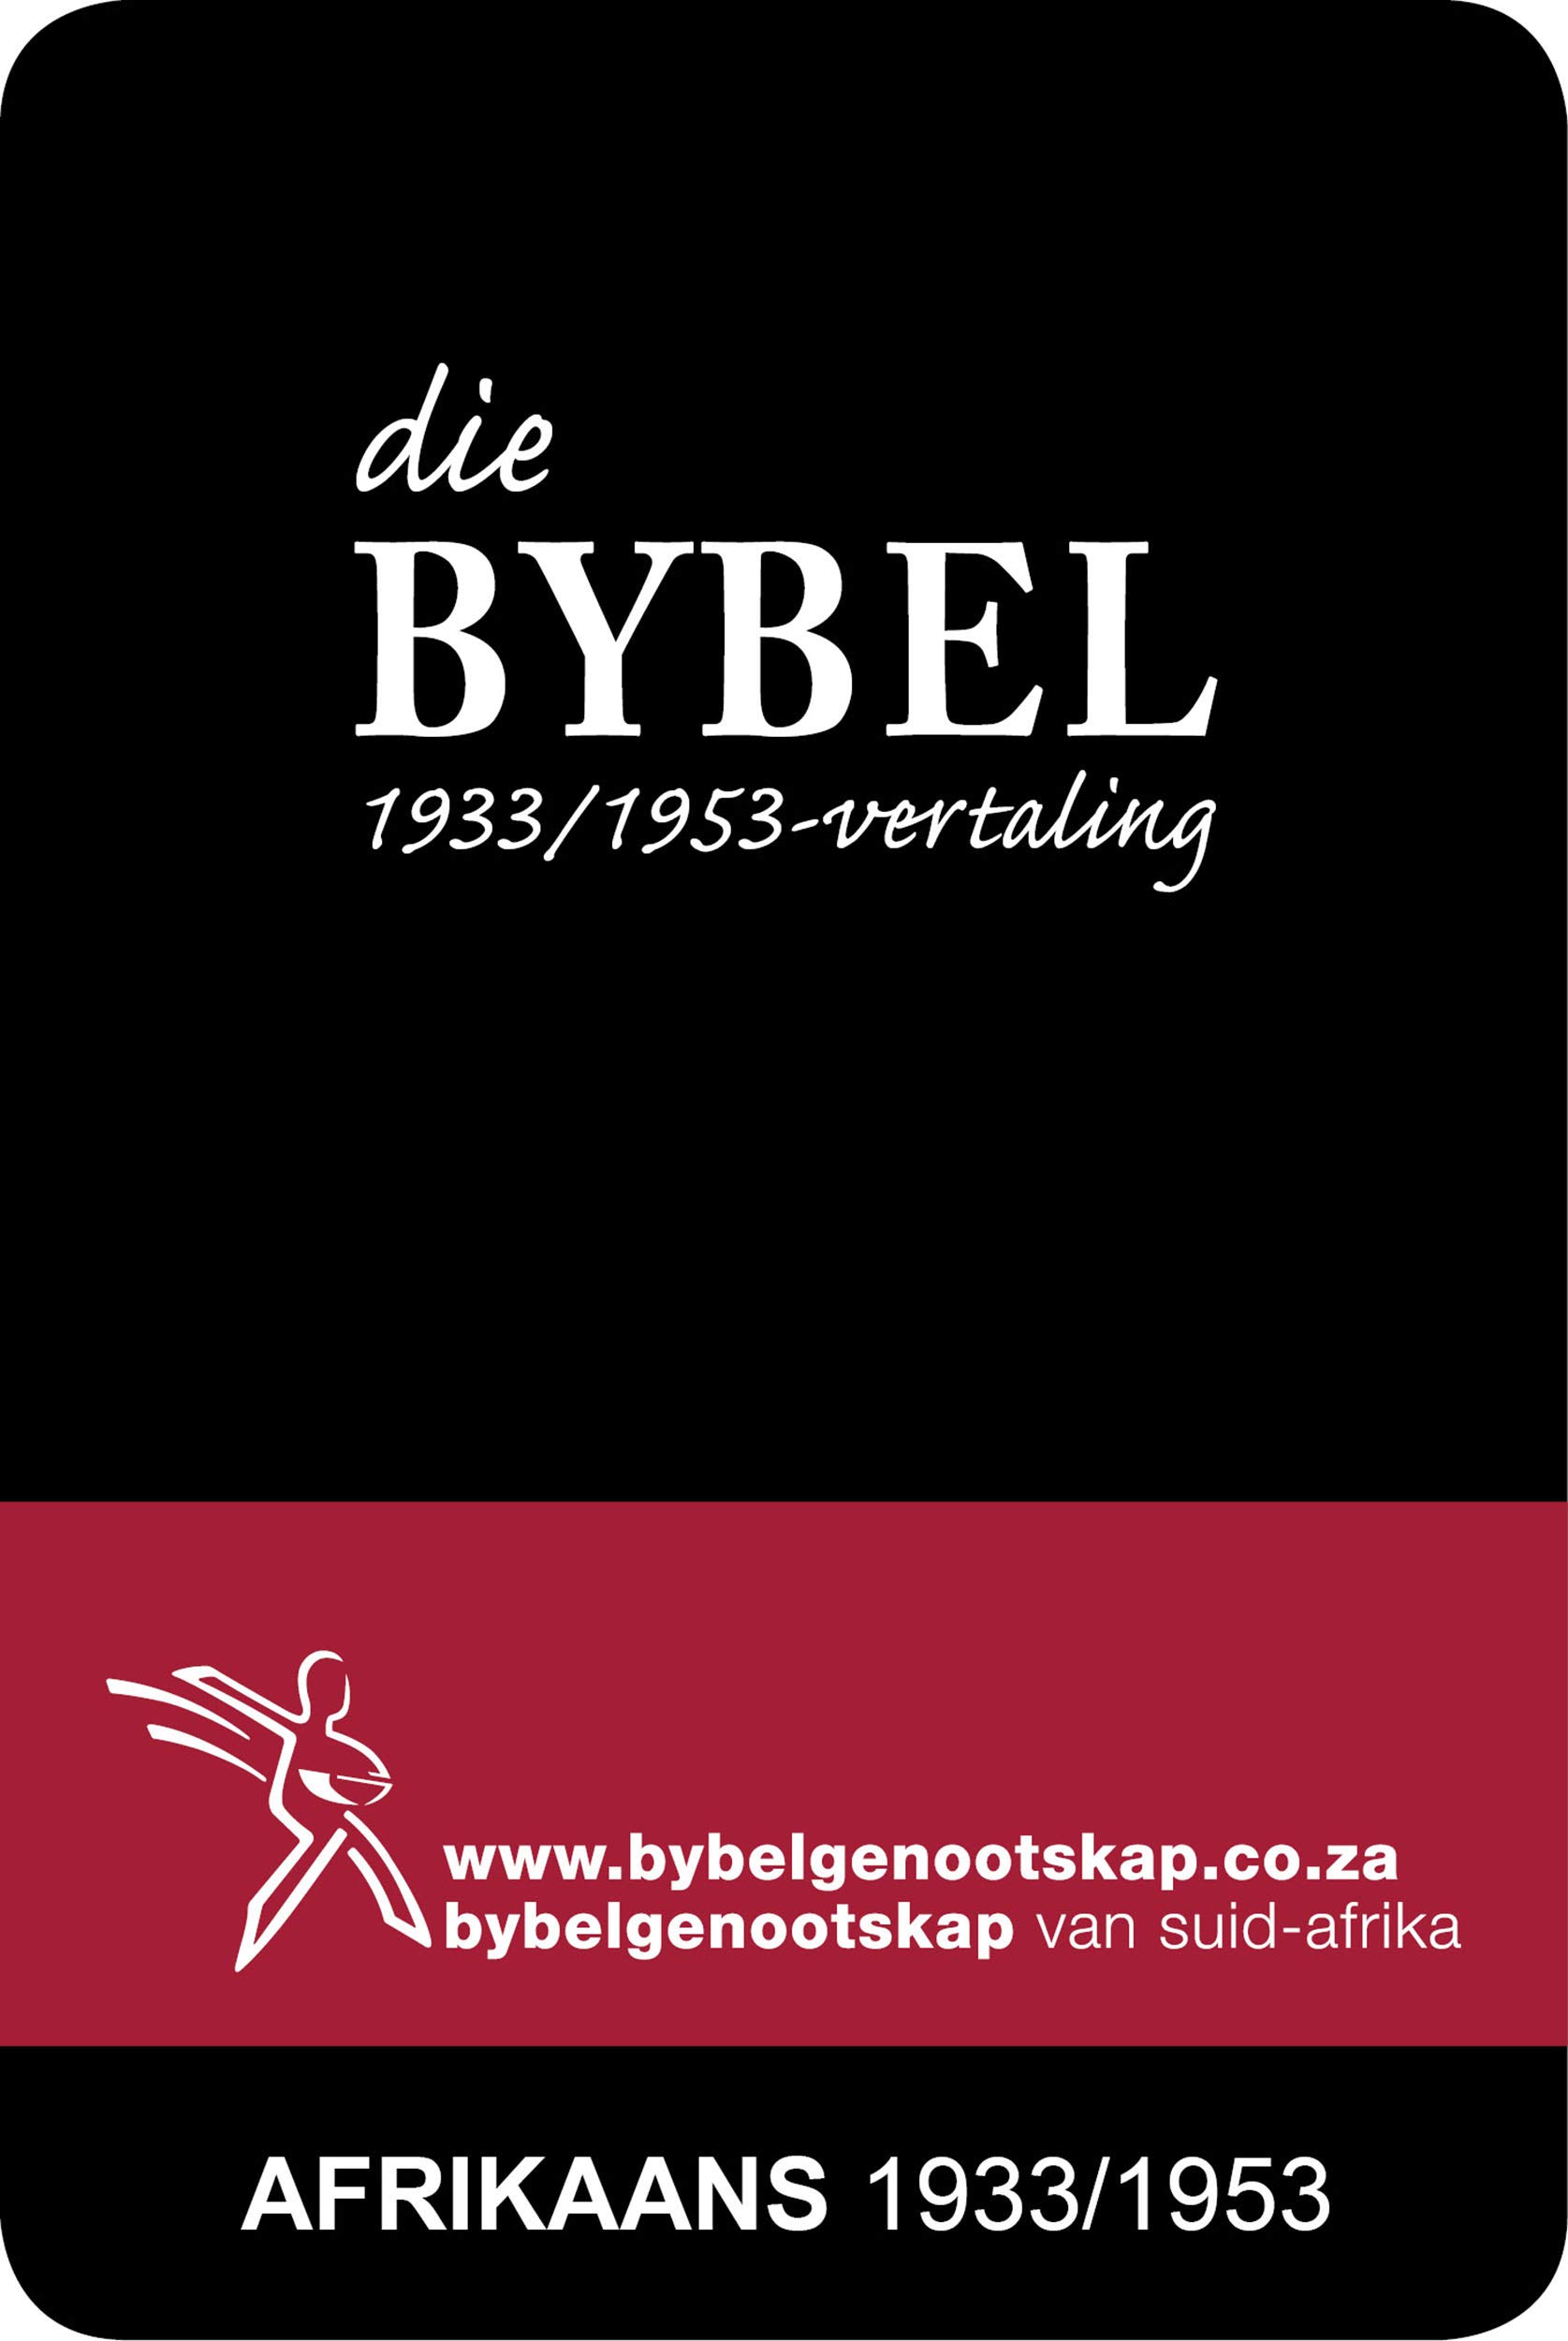 DIE BYBEL: Afrikaans 1933/1953-vertaling (Afrikaans Edition)